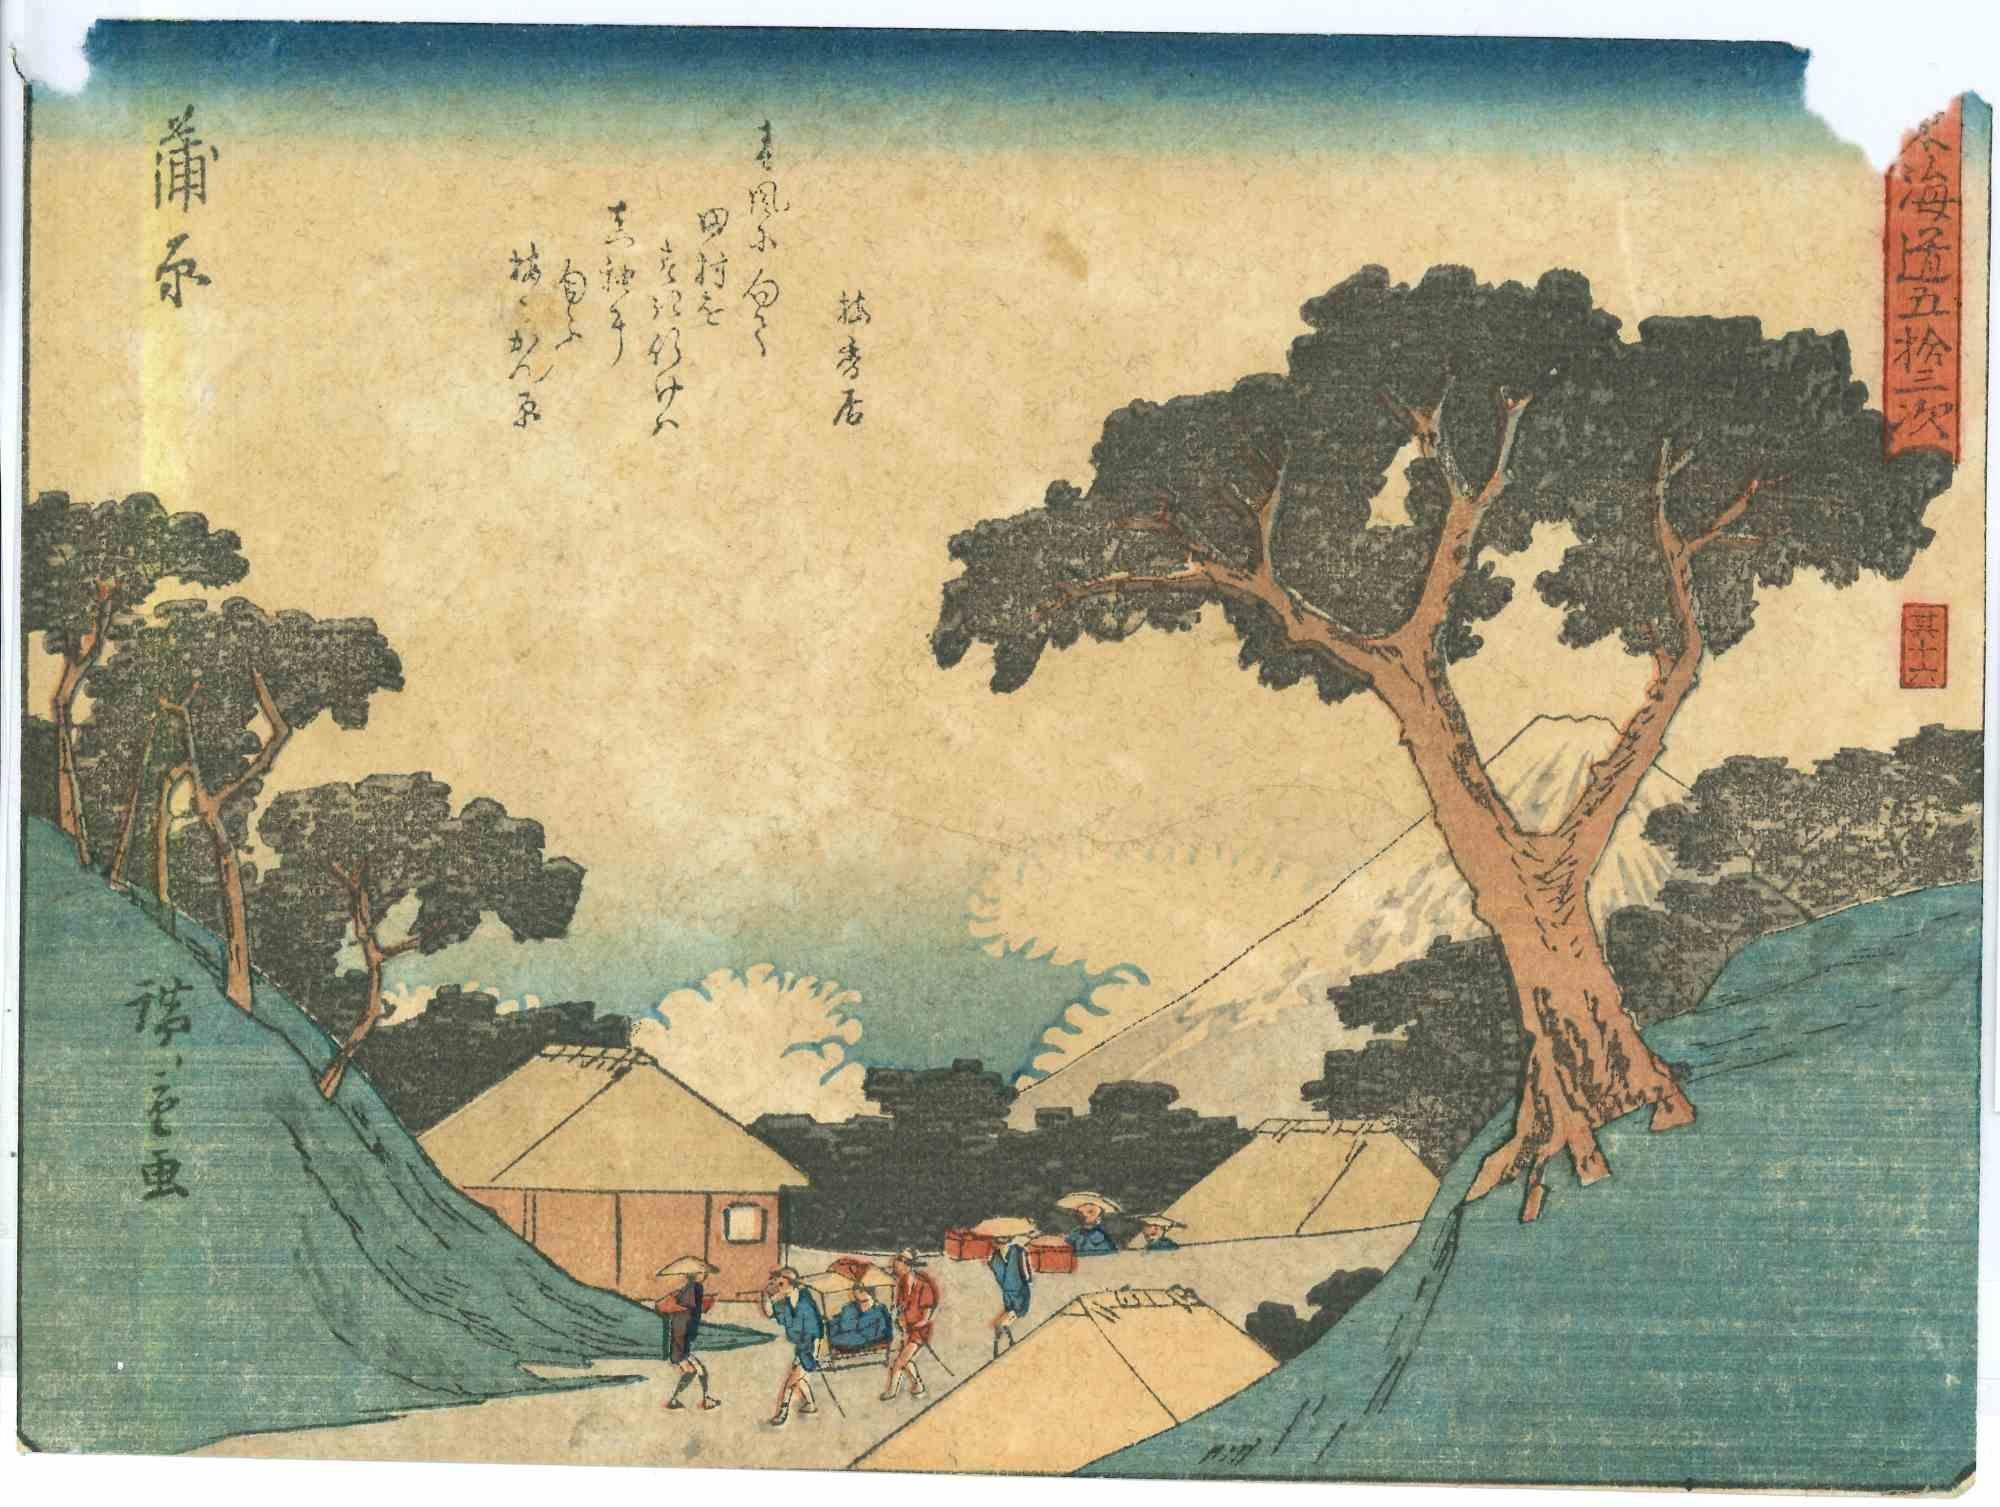 Kambara est une gravure sur bois polychrome (encre et couleur sur papier) d'Utagawa Hiroshige (Japonais, 1797-1858). La planche n° 16, issue de la suite d'estampes Cinquante-trois stations le long de la route du Tokaido (Tôkaidô gojûsan tsugi no